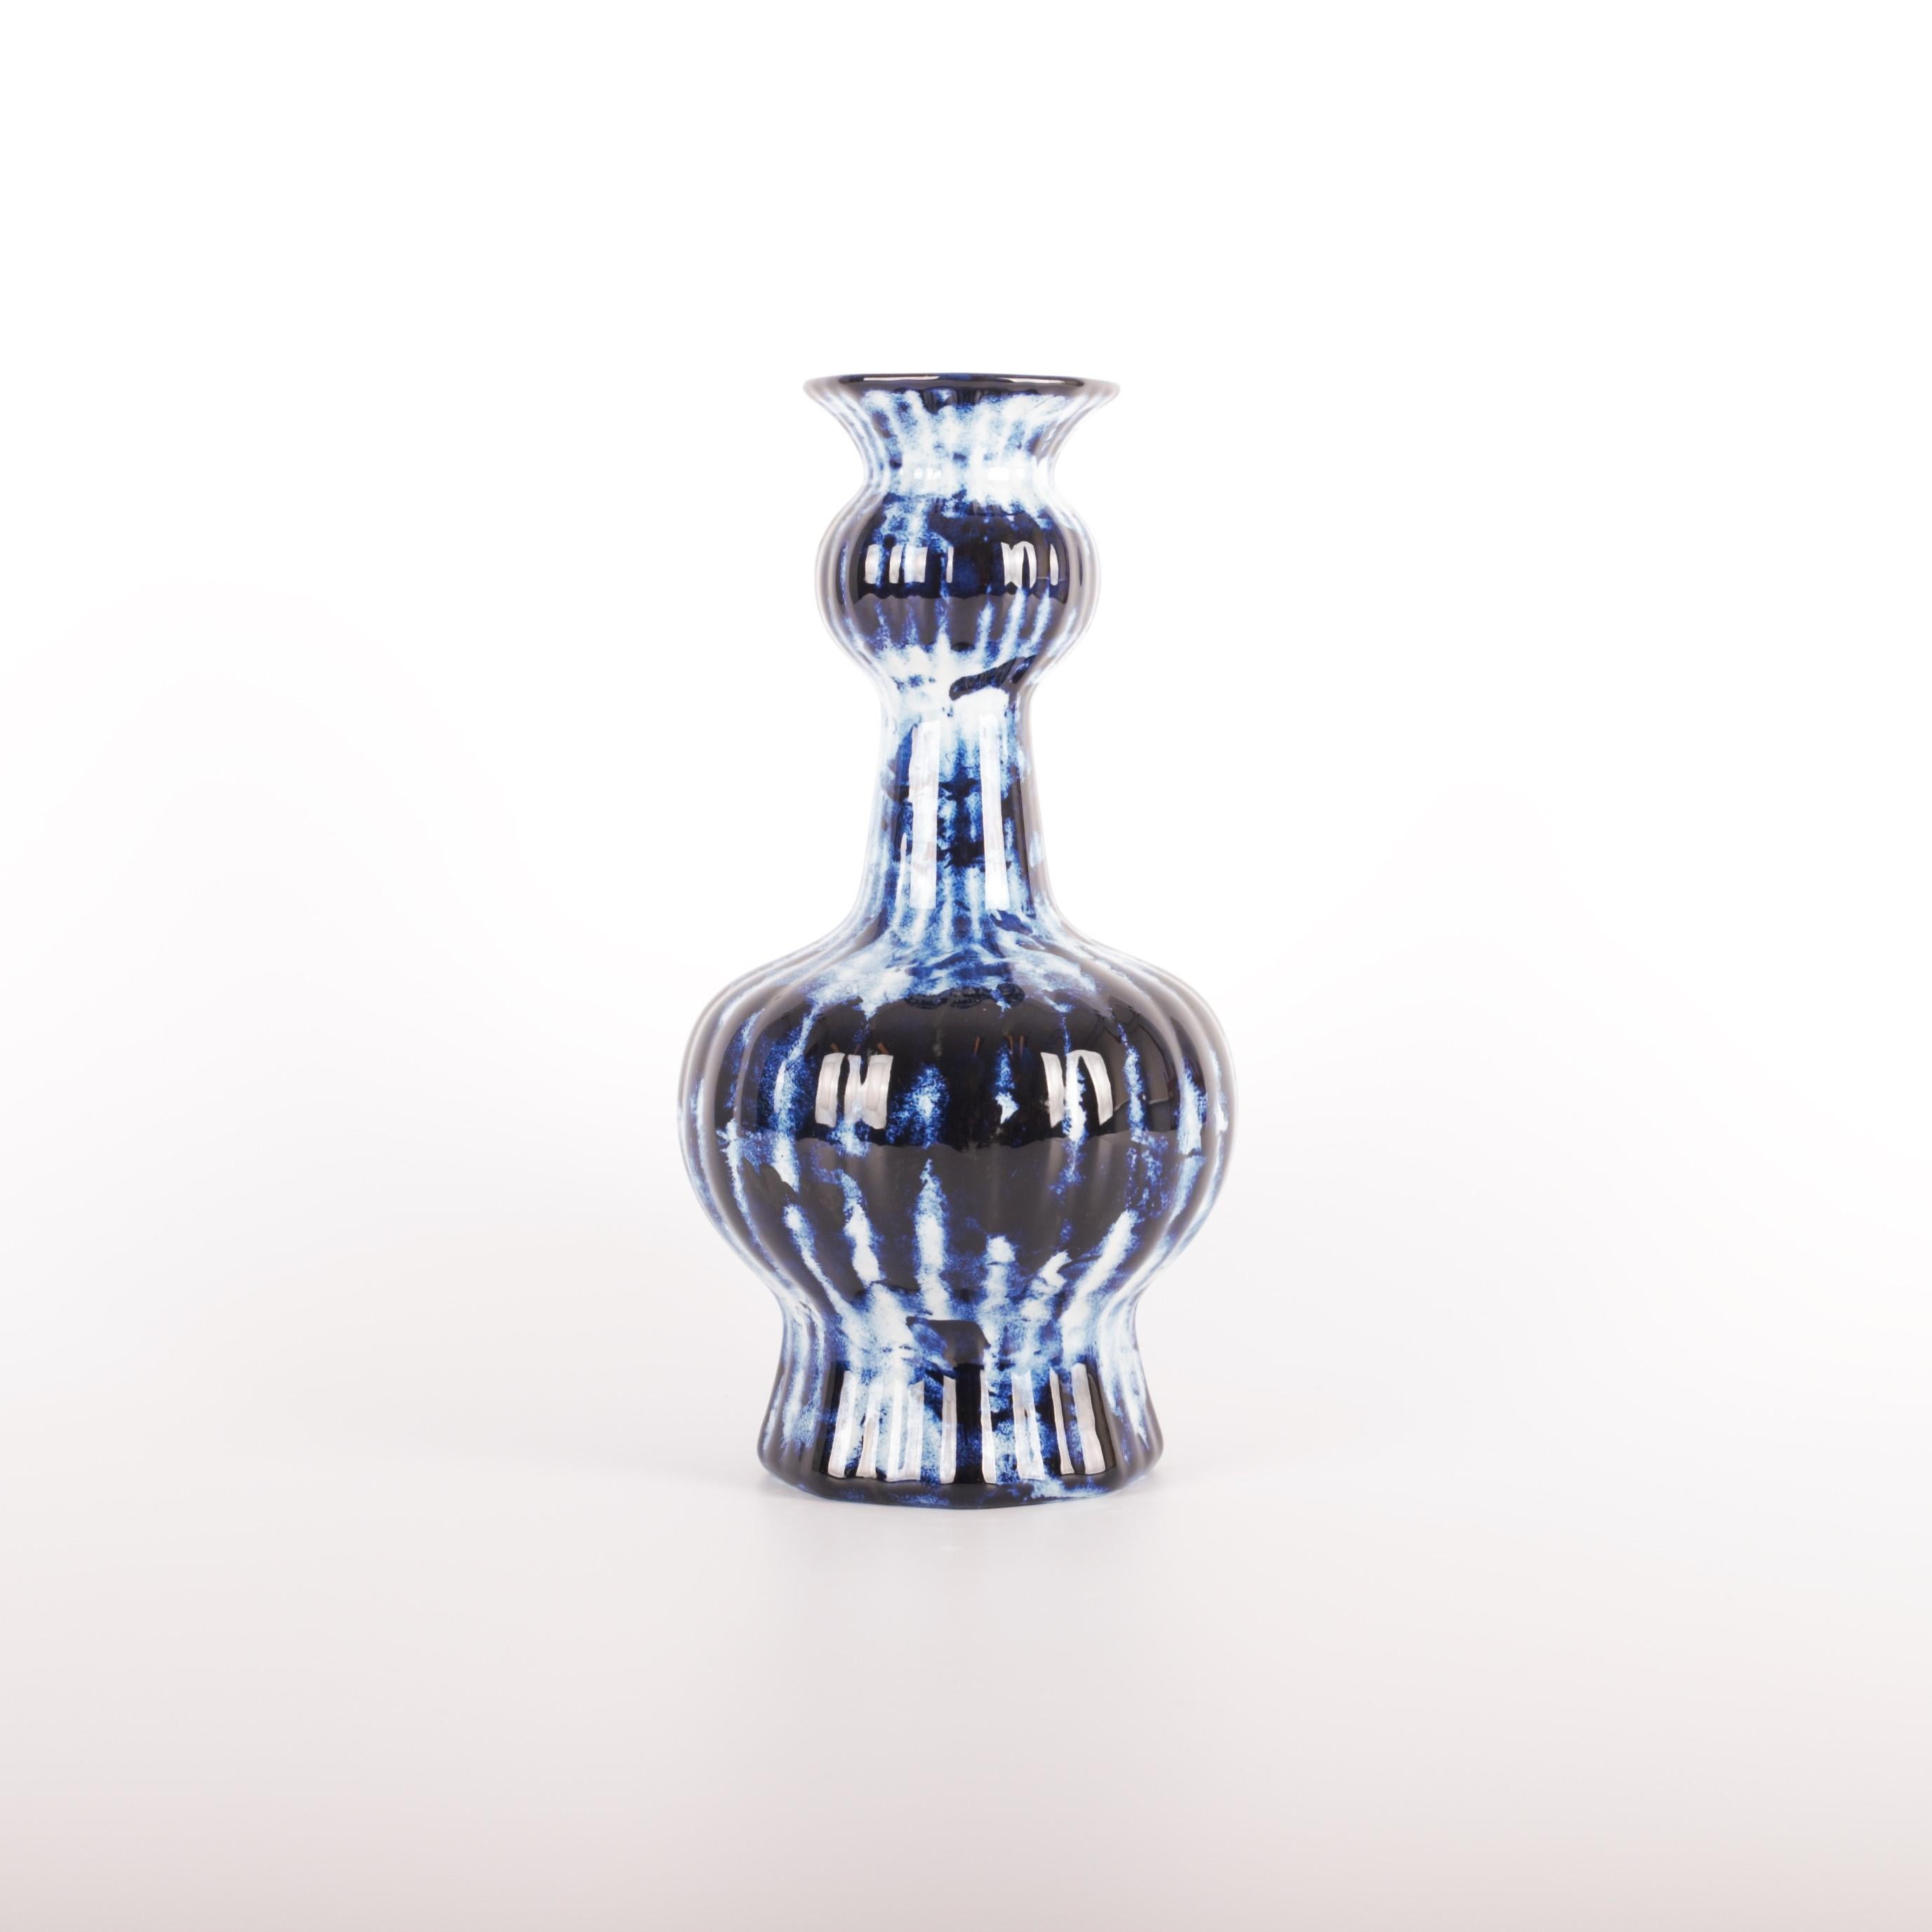 Le vase Longneck bleu Delft est disponible en tant qu'édition personnelle exclusive, le label de Marcel Wanders proposant des œuvres de nature plus personnelle et expérimentale. Les pièces de la série Delft Blue sont uniques et illimitées grâce à la